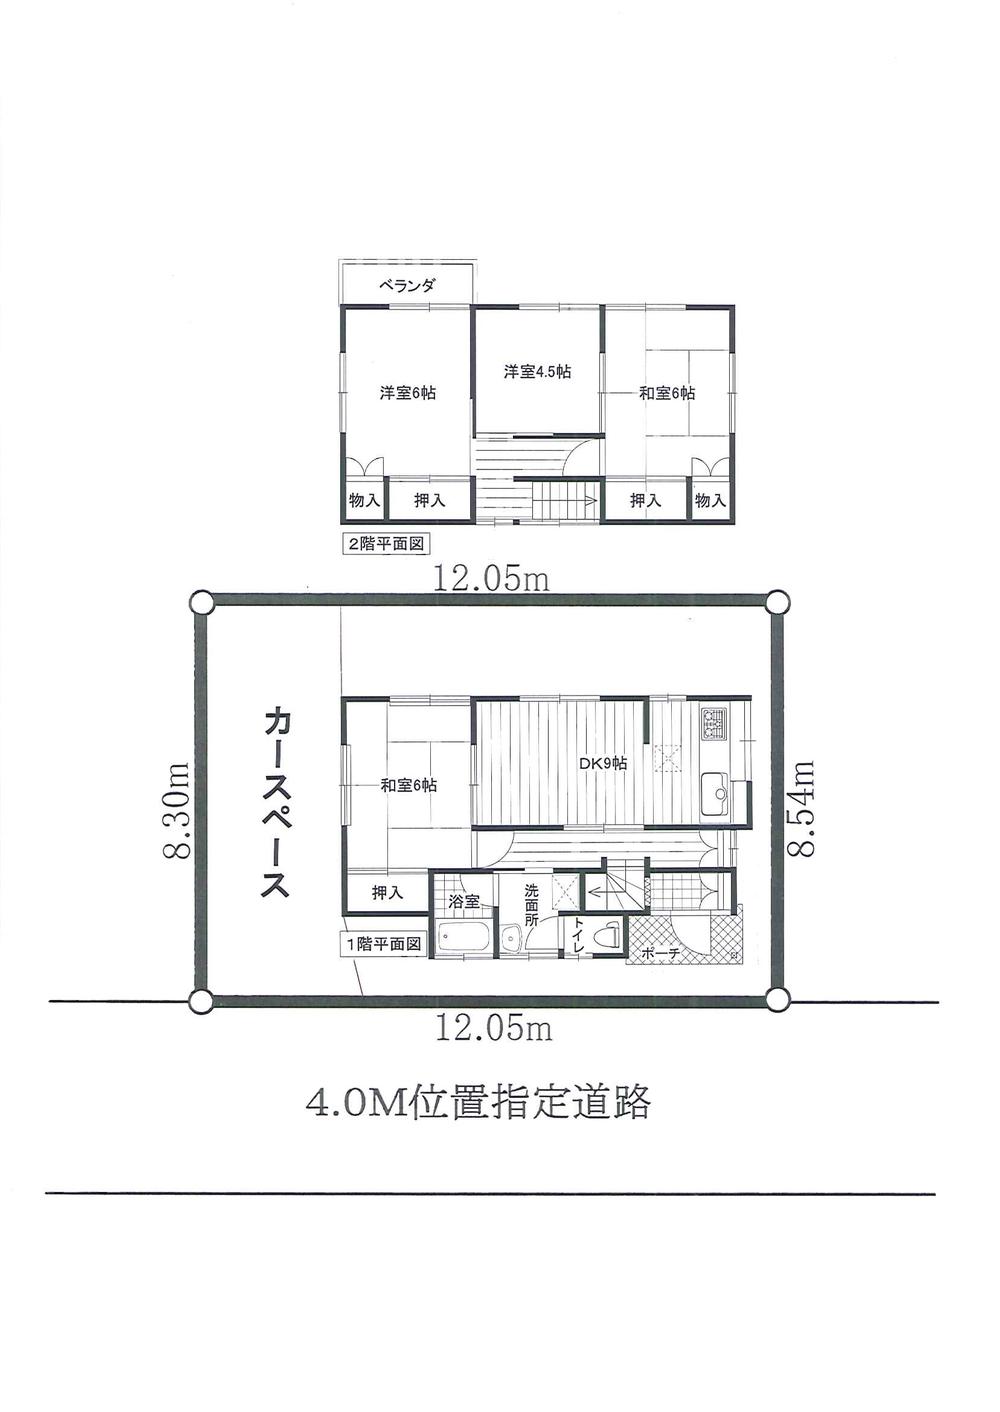 Floor plan. 8.8 million yen, 4DK, Land area 101.45 sq m , Building area 78.25 sq m